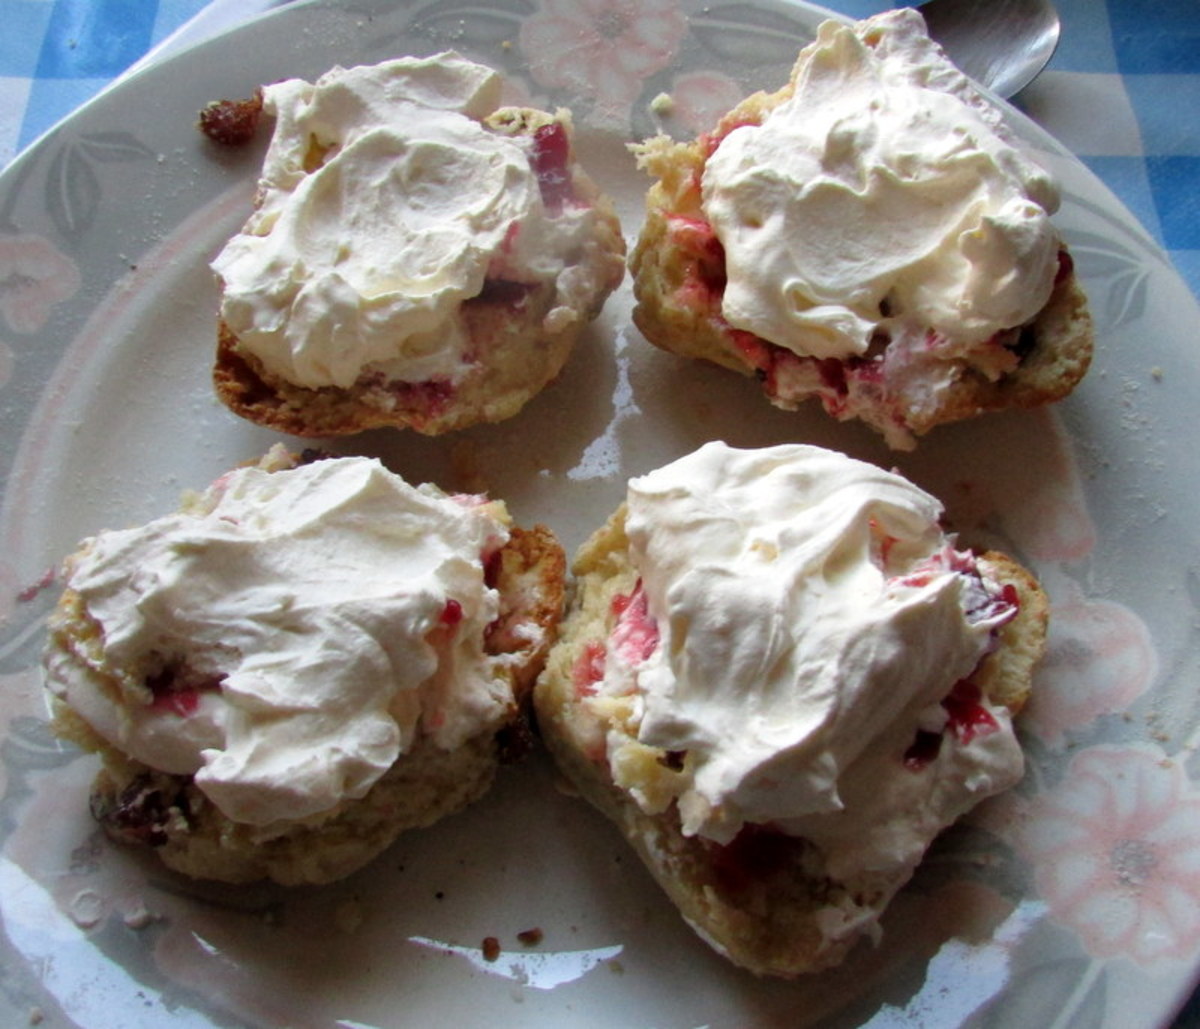 Fruit scones with cream